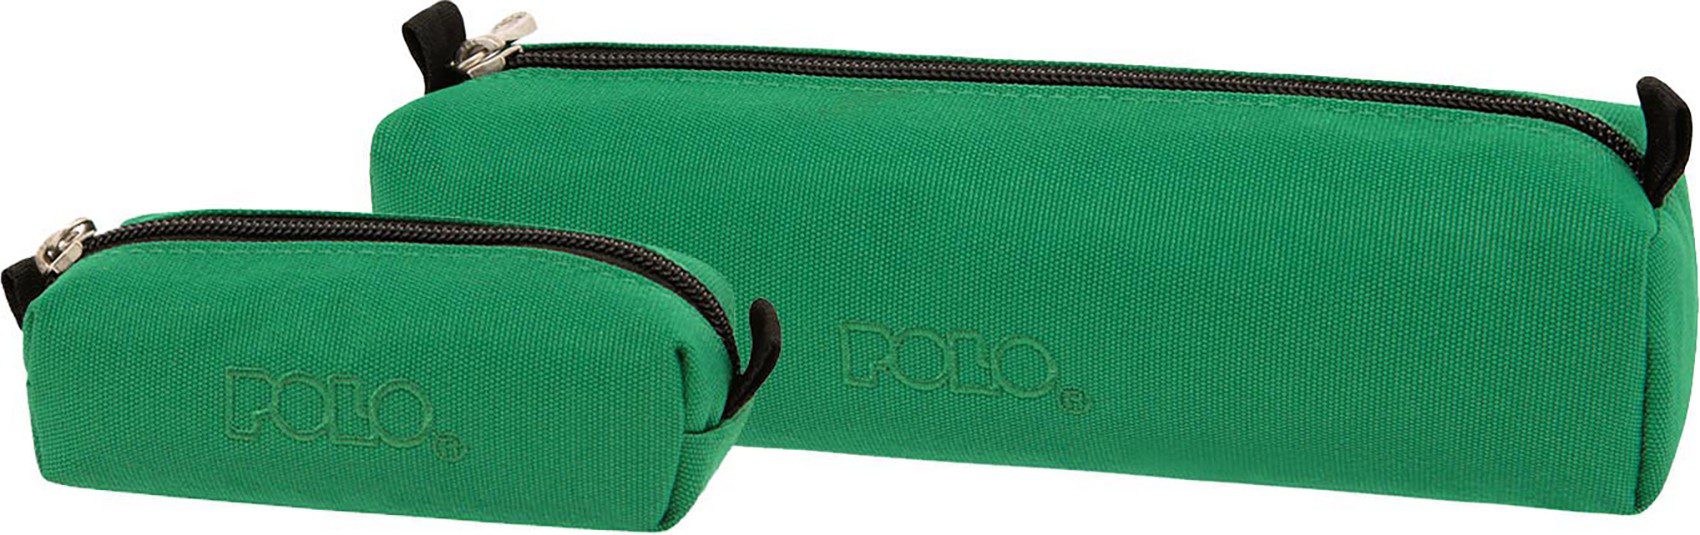 Polo Κασετινα Wallet Cord Πρασινο 2023